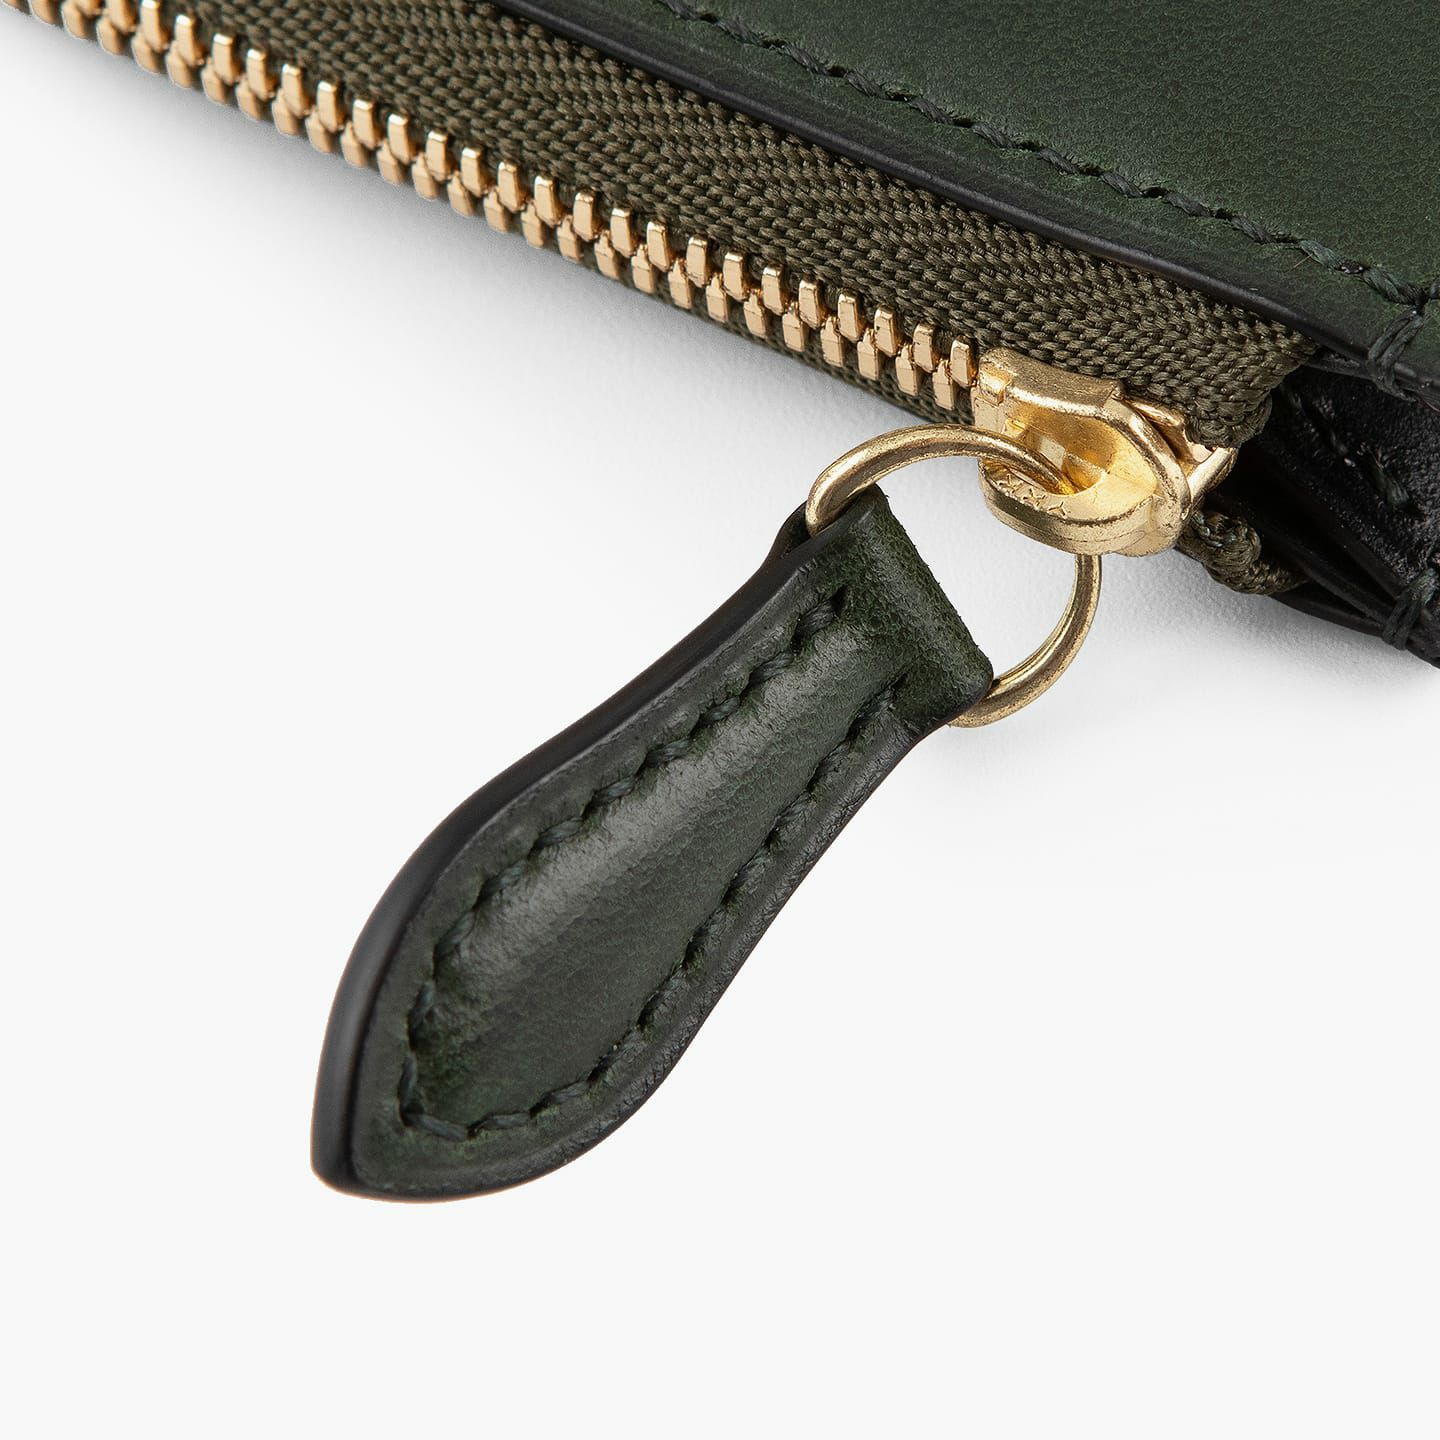 外装＆内装コインポケット（イングラサット）：Green、内装（イングラサット）：Black、糸色：外装＆内装コインポケットと同系色、ファスナー：Gold、引き手：外装と同じ革